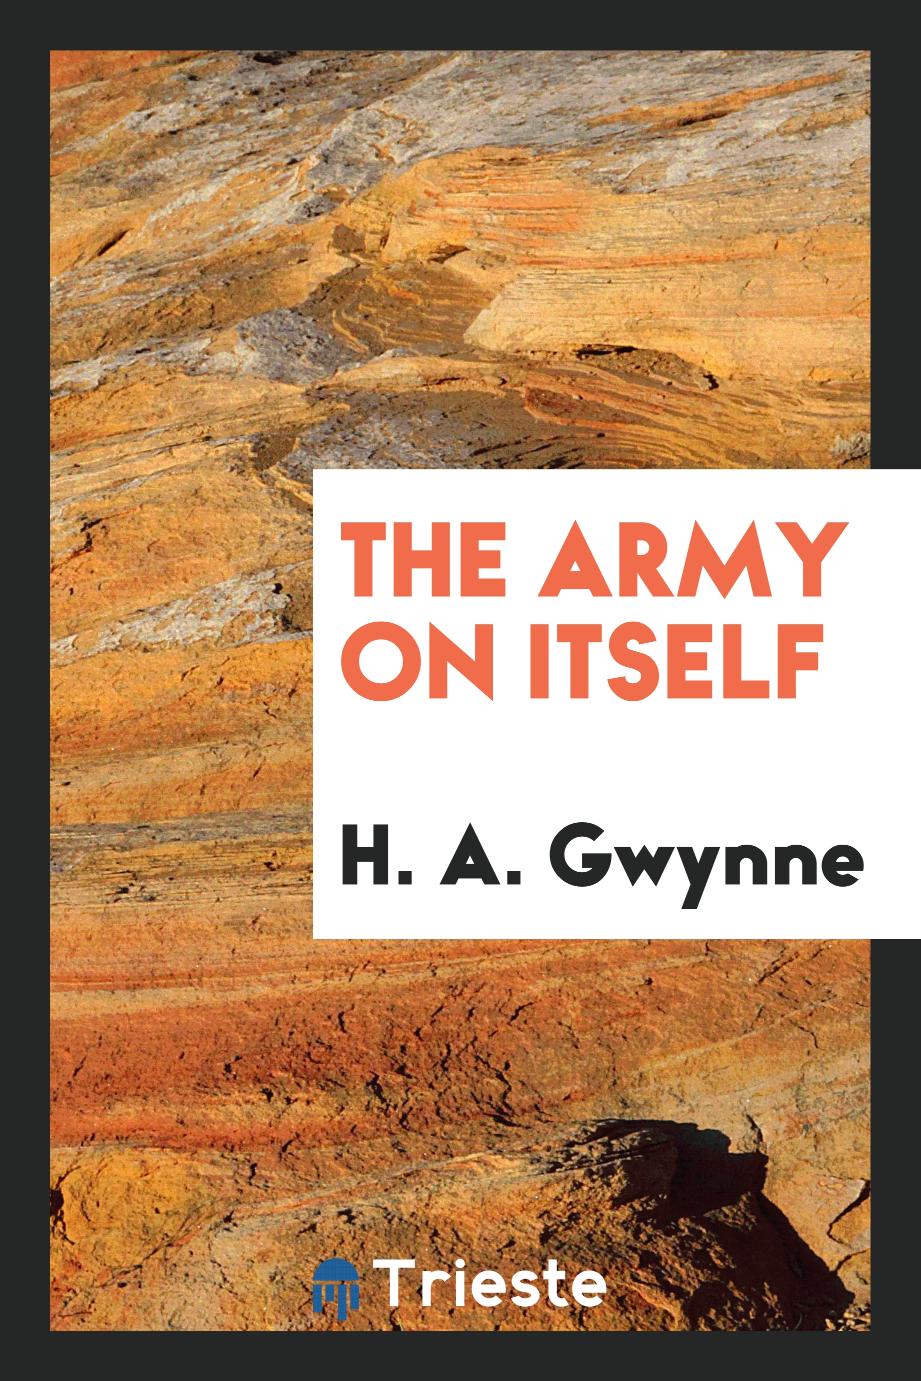 H. A. Gwynne - The army on itself